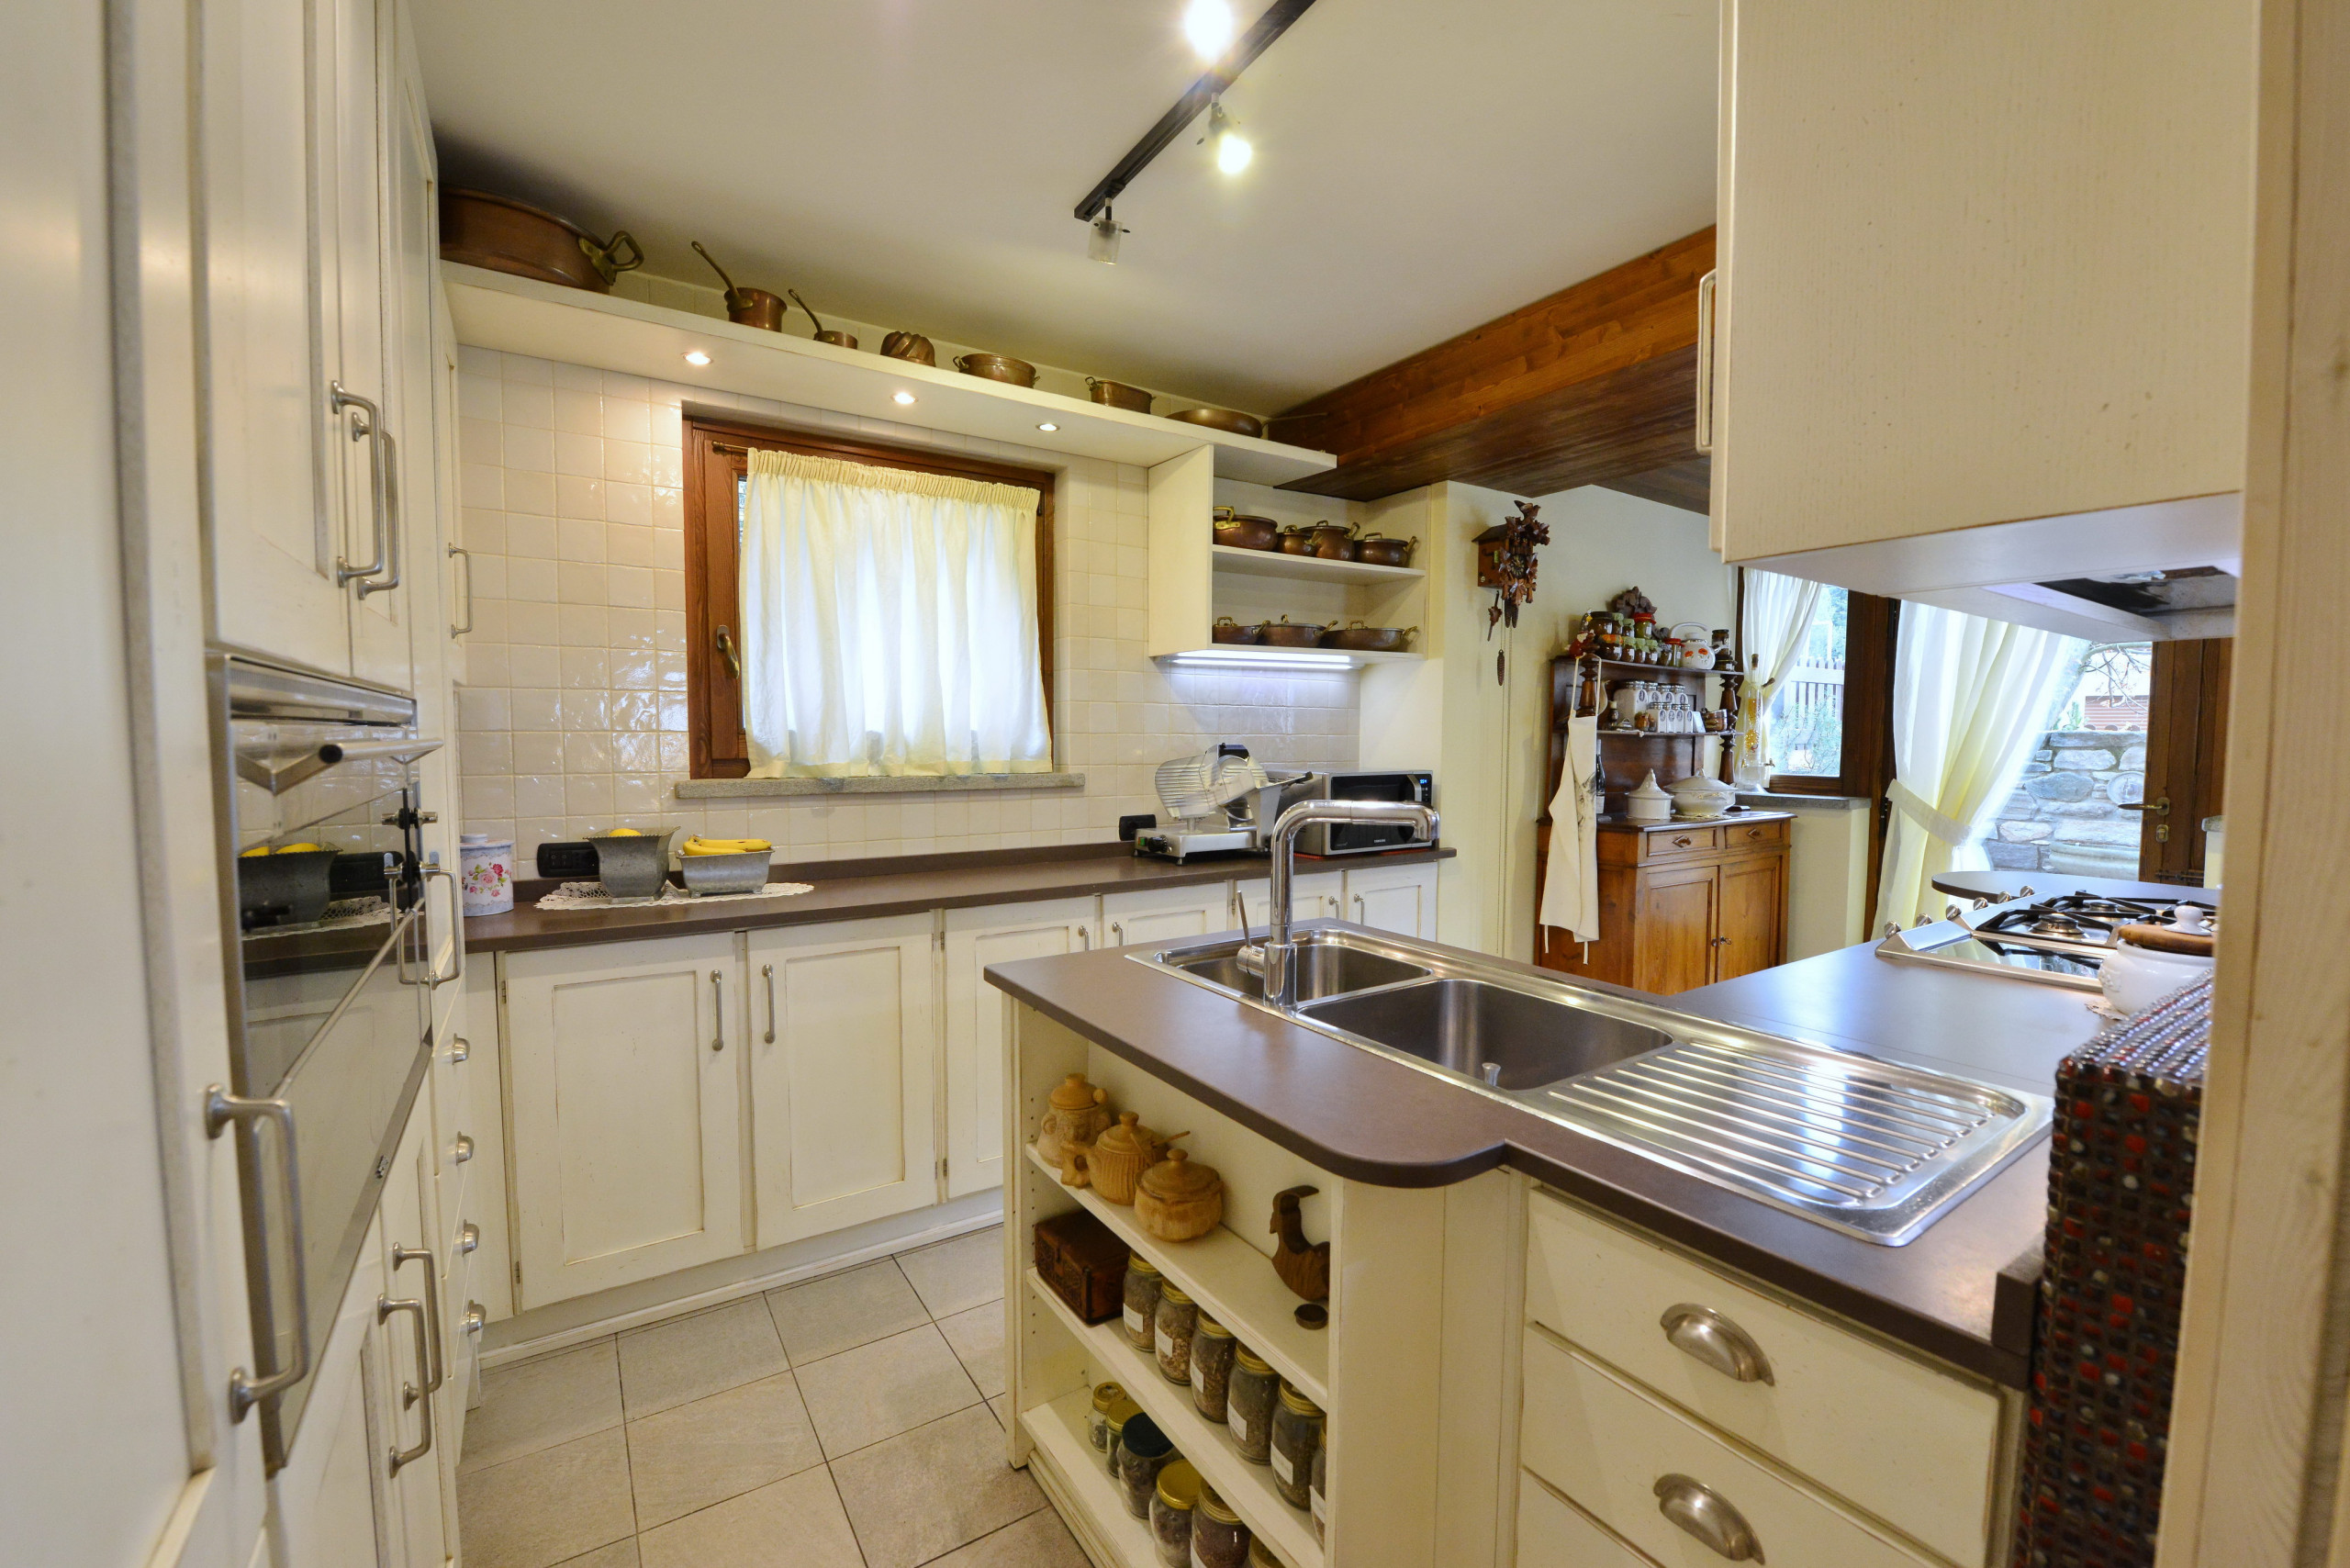 La cucina in legno laccato bianco e inserti in legno